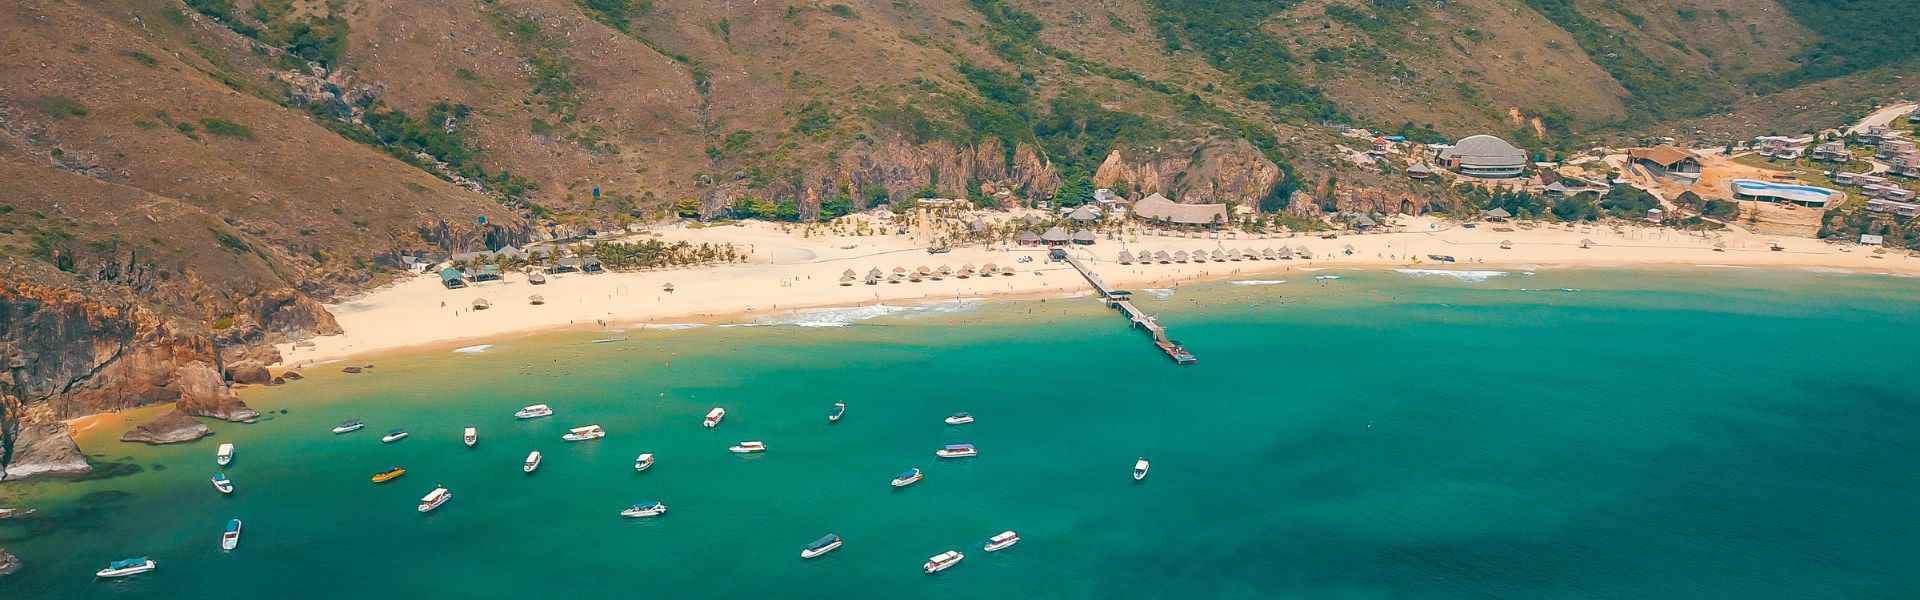 Playas Vietnam: Las 25 playas más bonitas de Vietnam